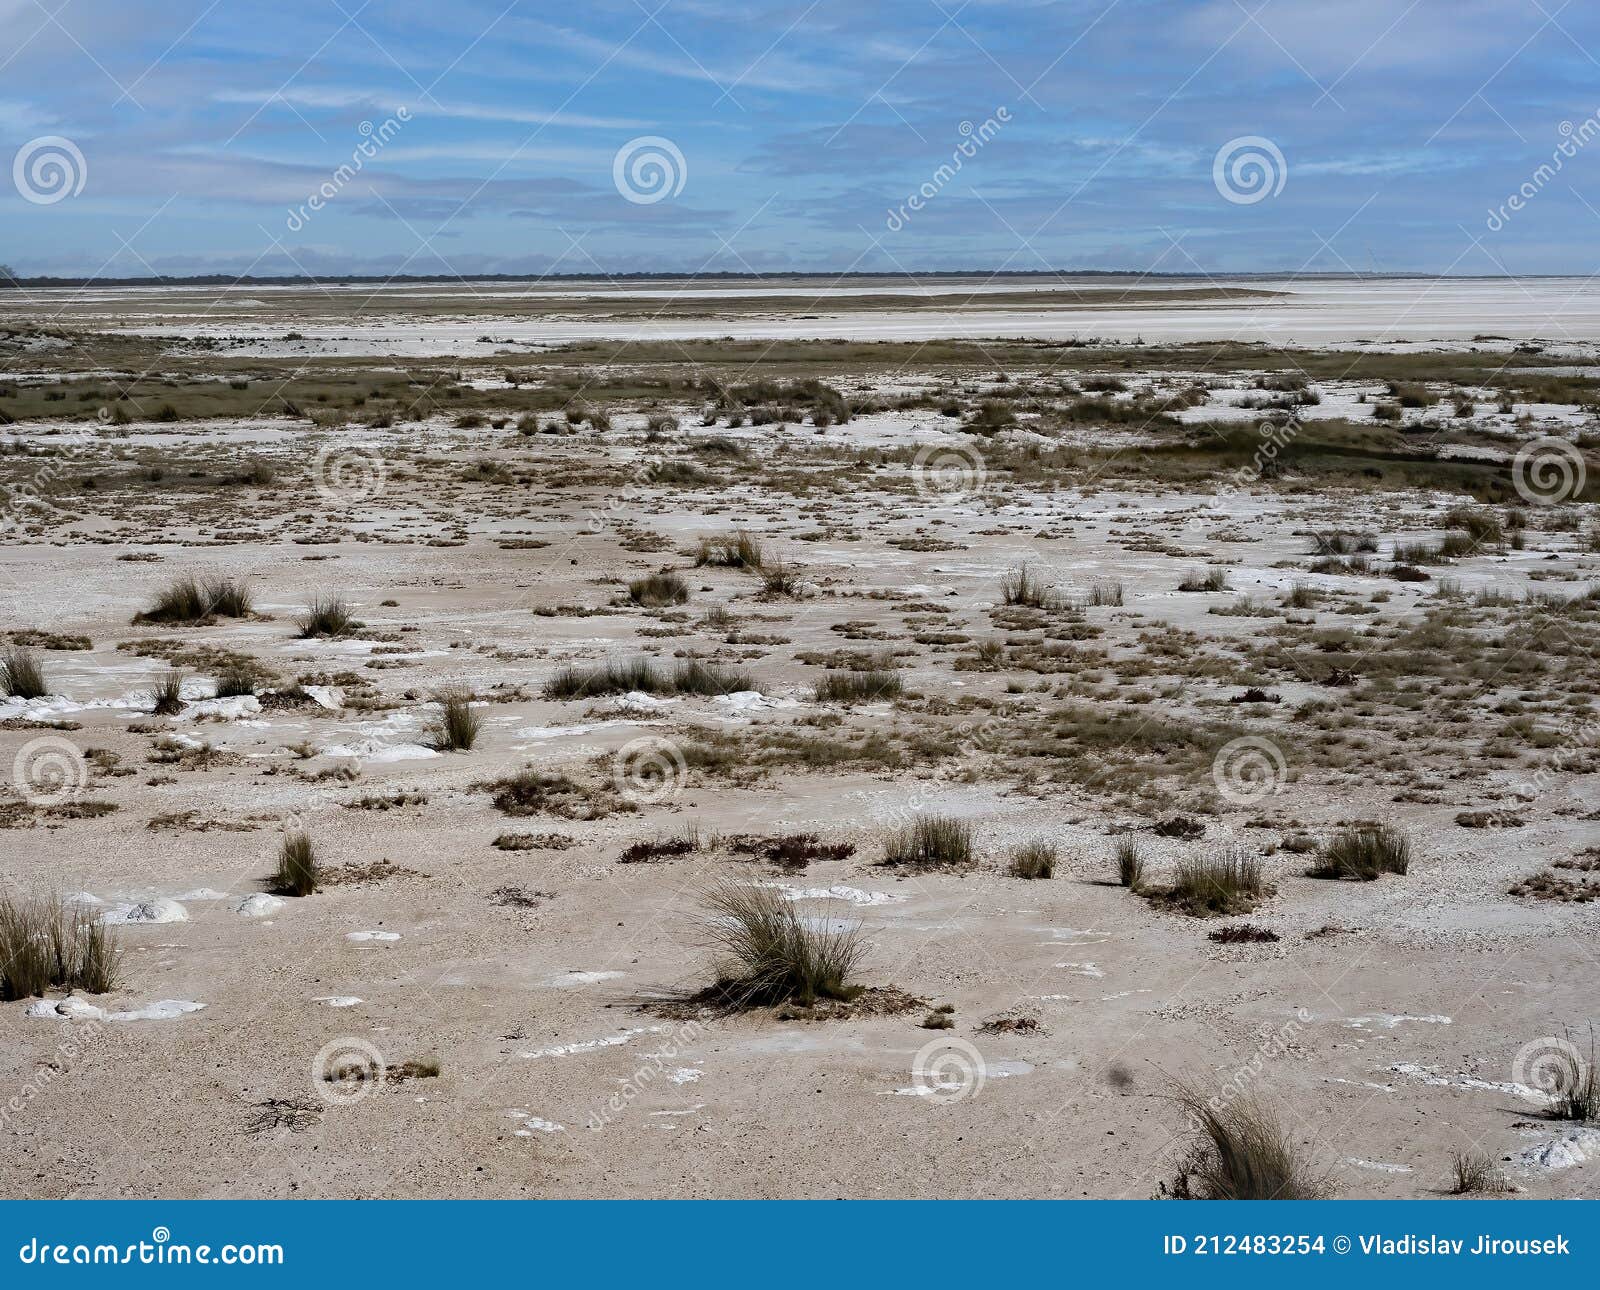 inhospitable landscape in etosha national park. namibia